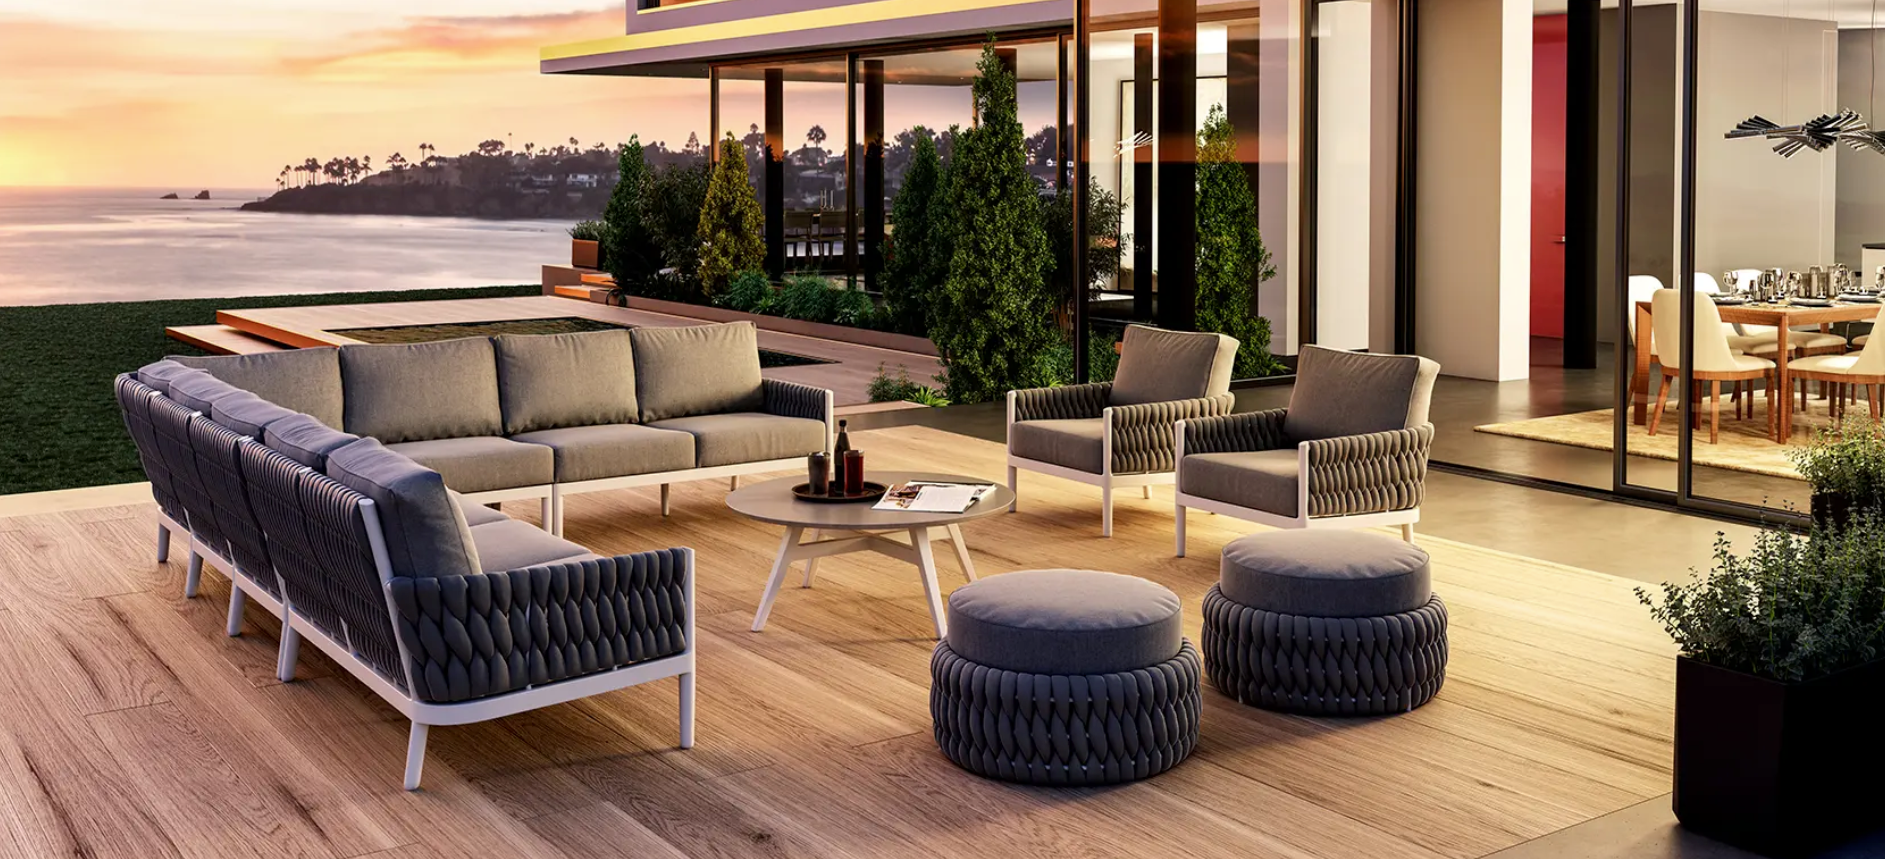 Luxury Patio Furniture